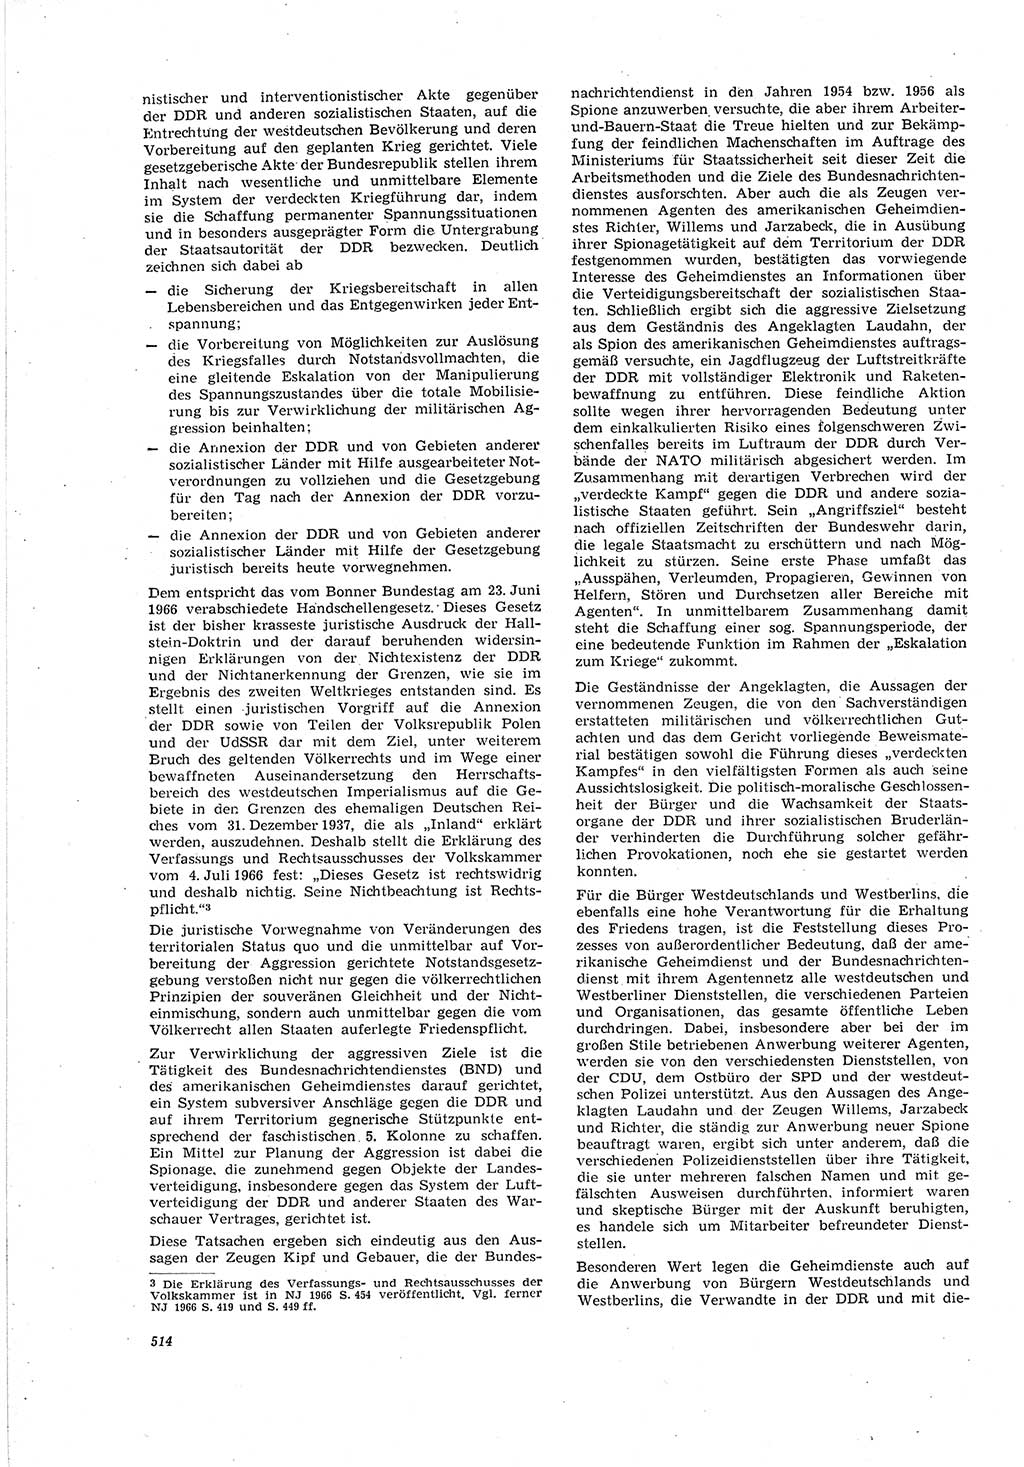 Neue Justiz (NJ), Zeitschrift für Recht und Rechtswissenschaft [Deutsche Demokratische Republik (DDR)], 20. Jahrgang 1966, Seite 514 (NJ DDR 1966, S. 514)